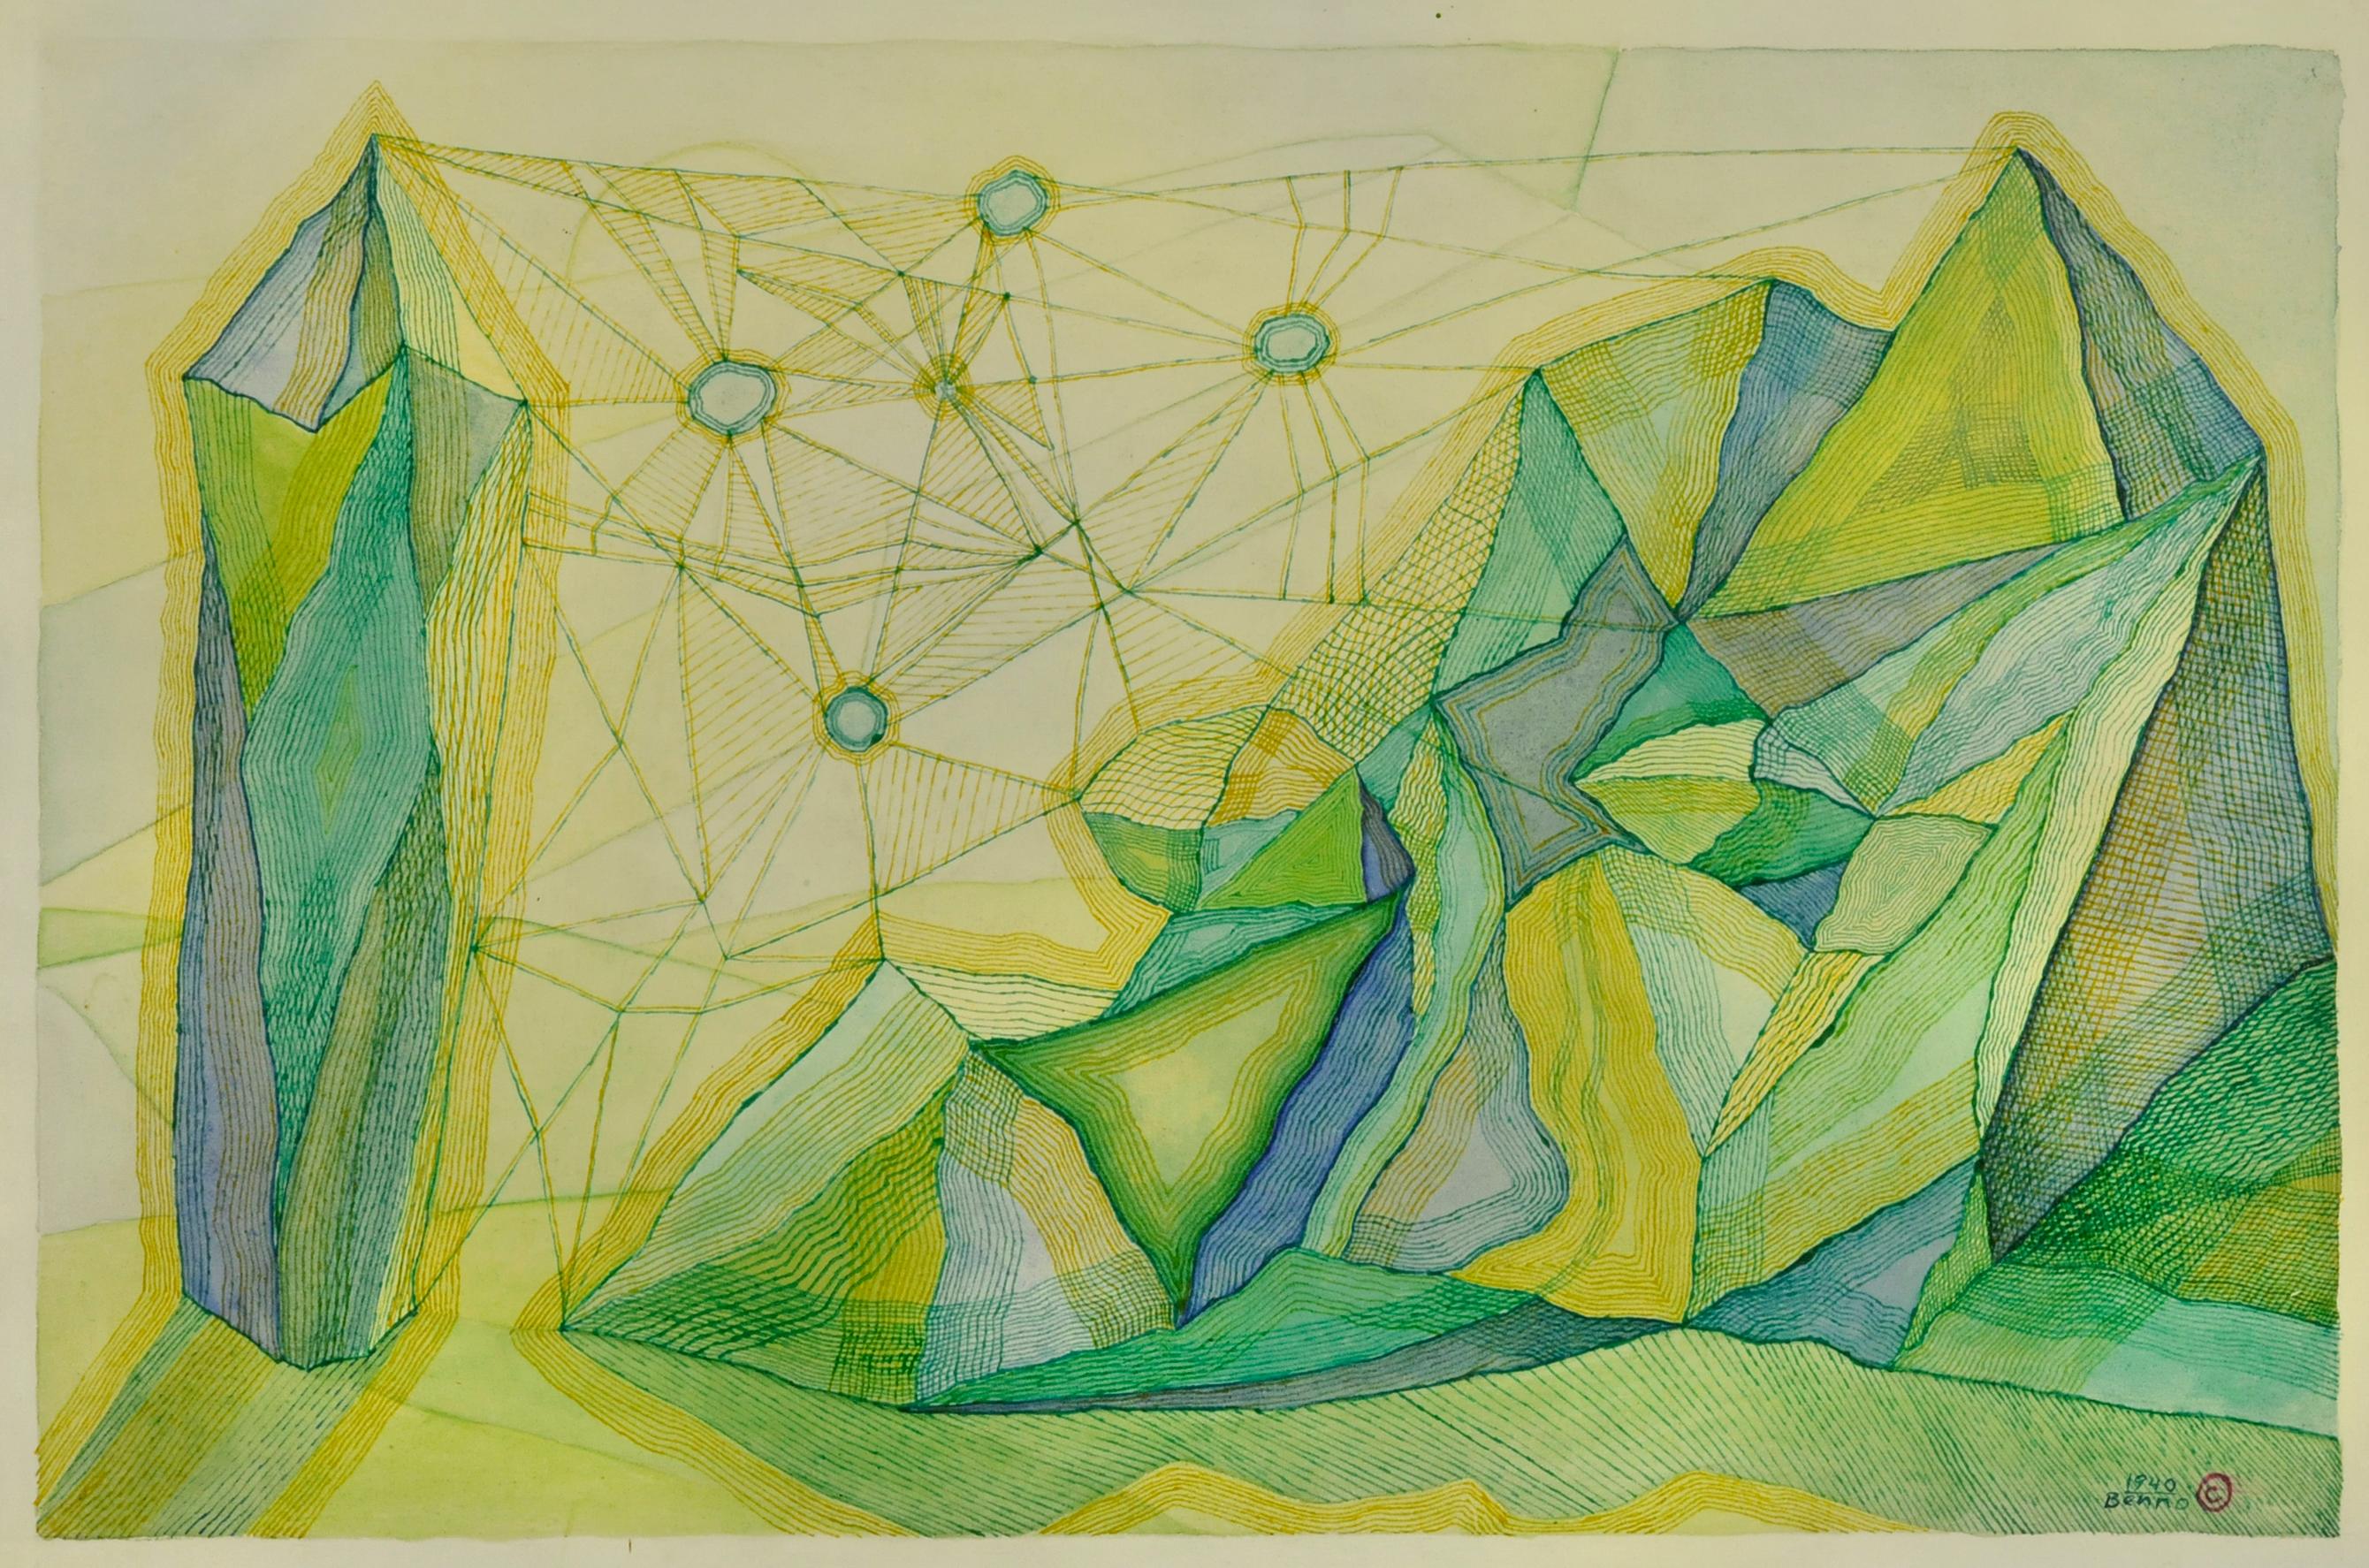 Benjamin G. Benno Abstract Drawing - Cobwebs and Rocks